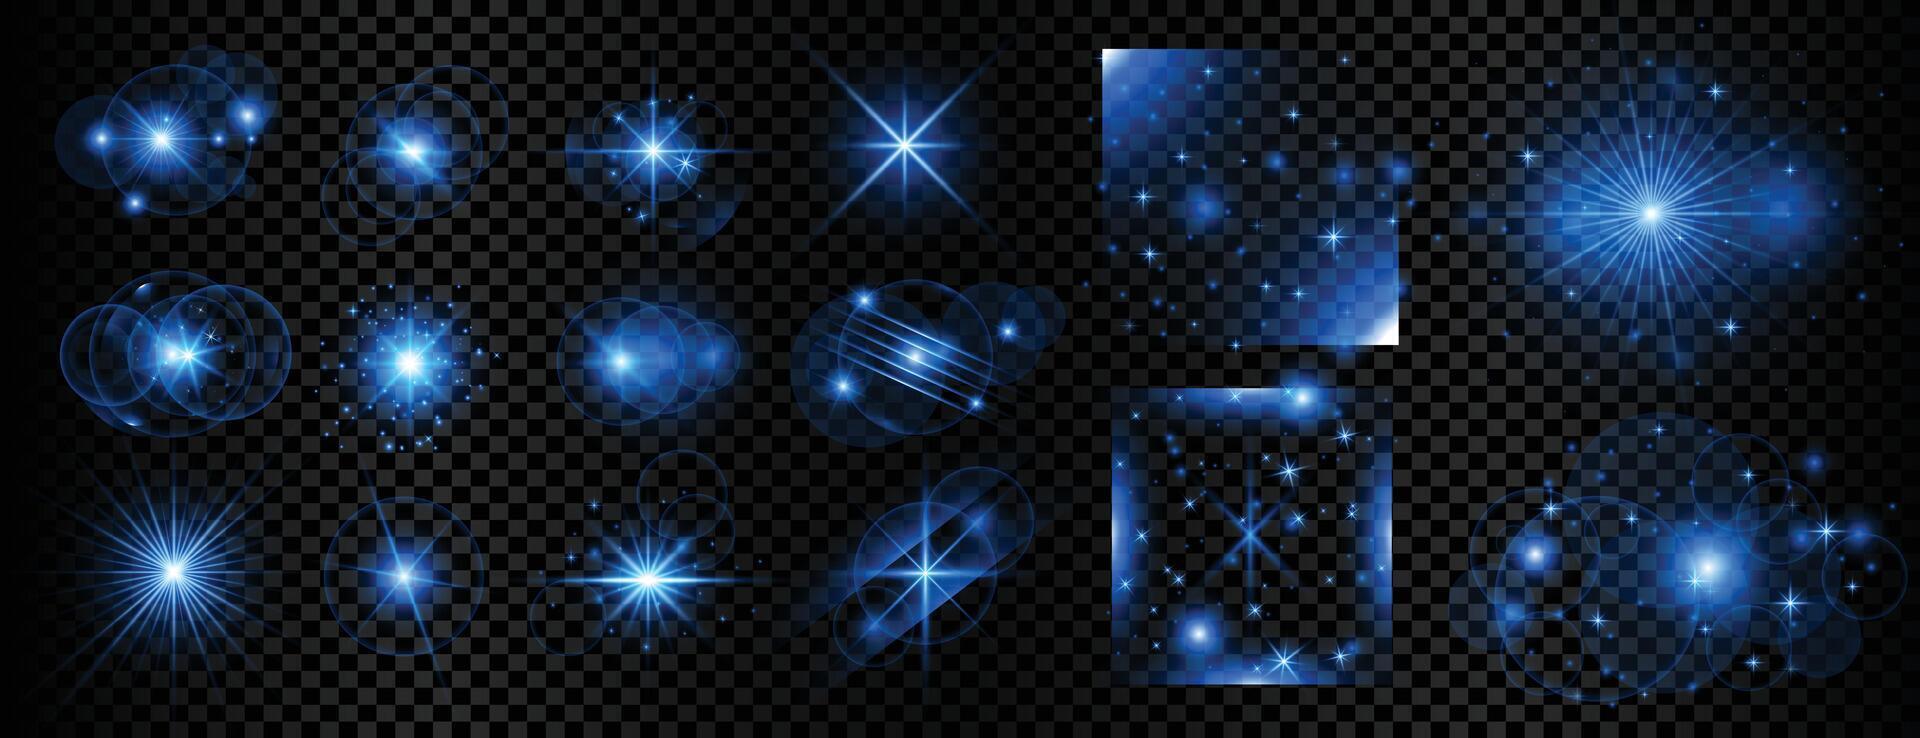 sterrenhemel blauw magisch straal licht achtergrond in verzameling vector